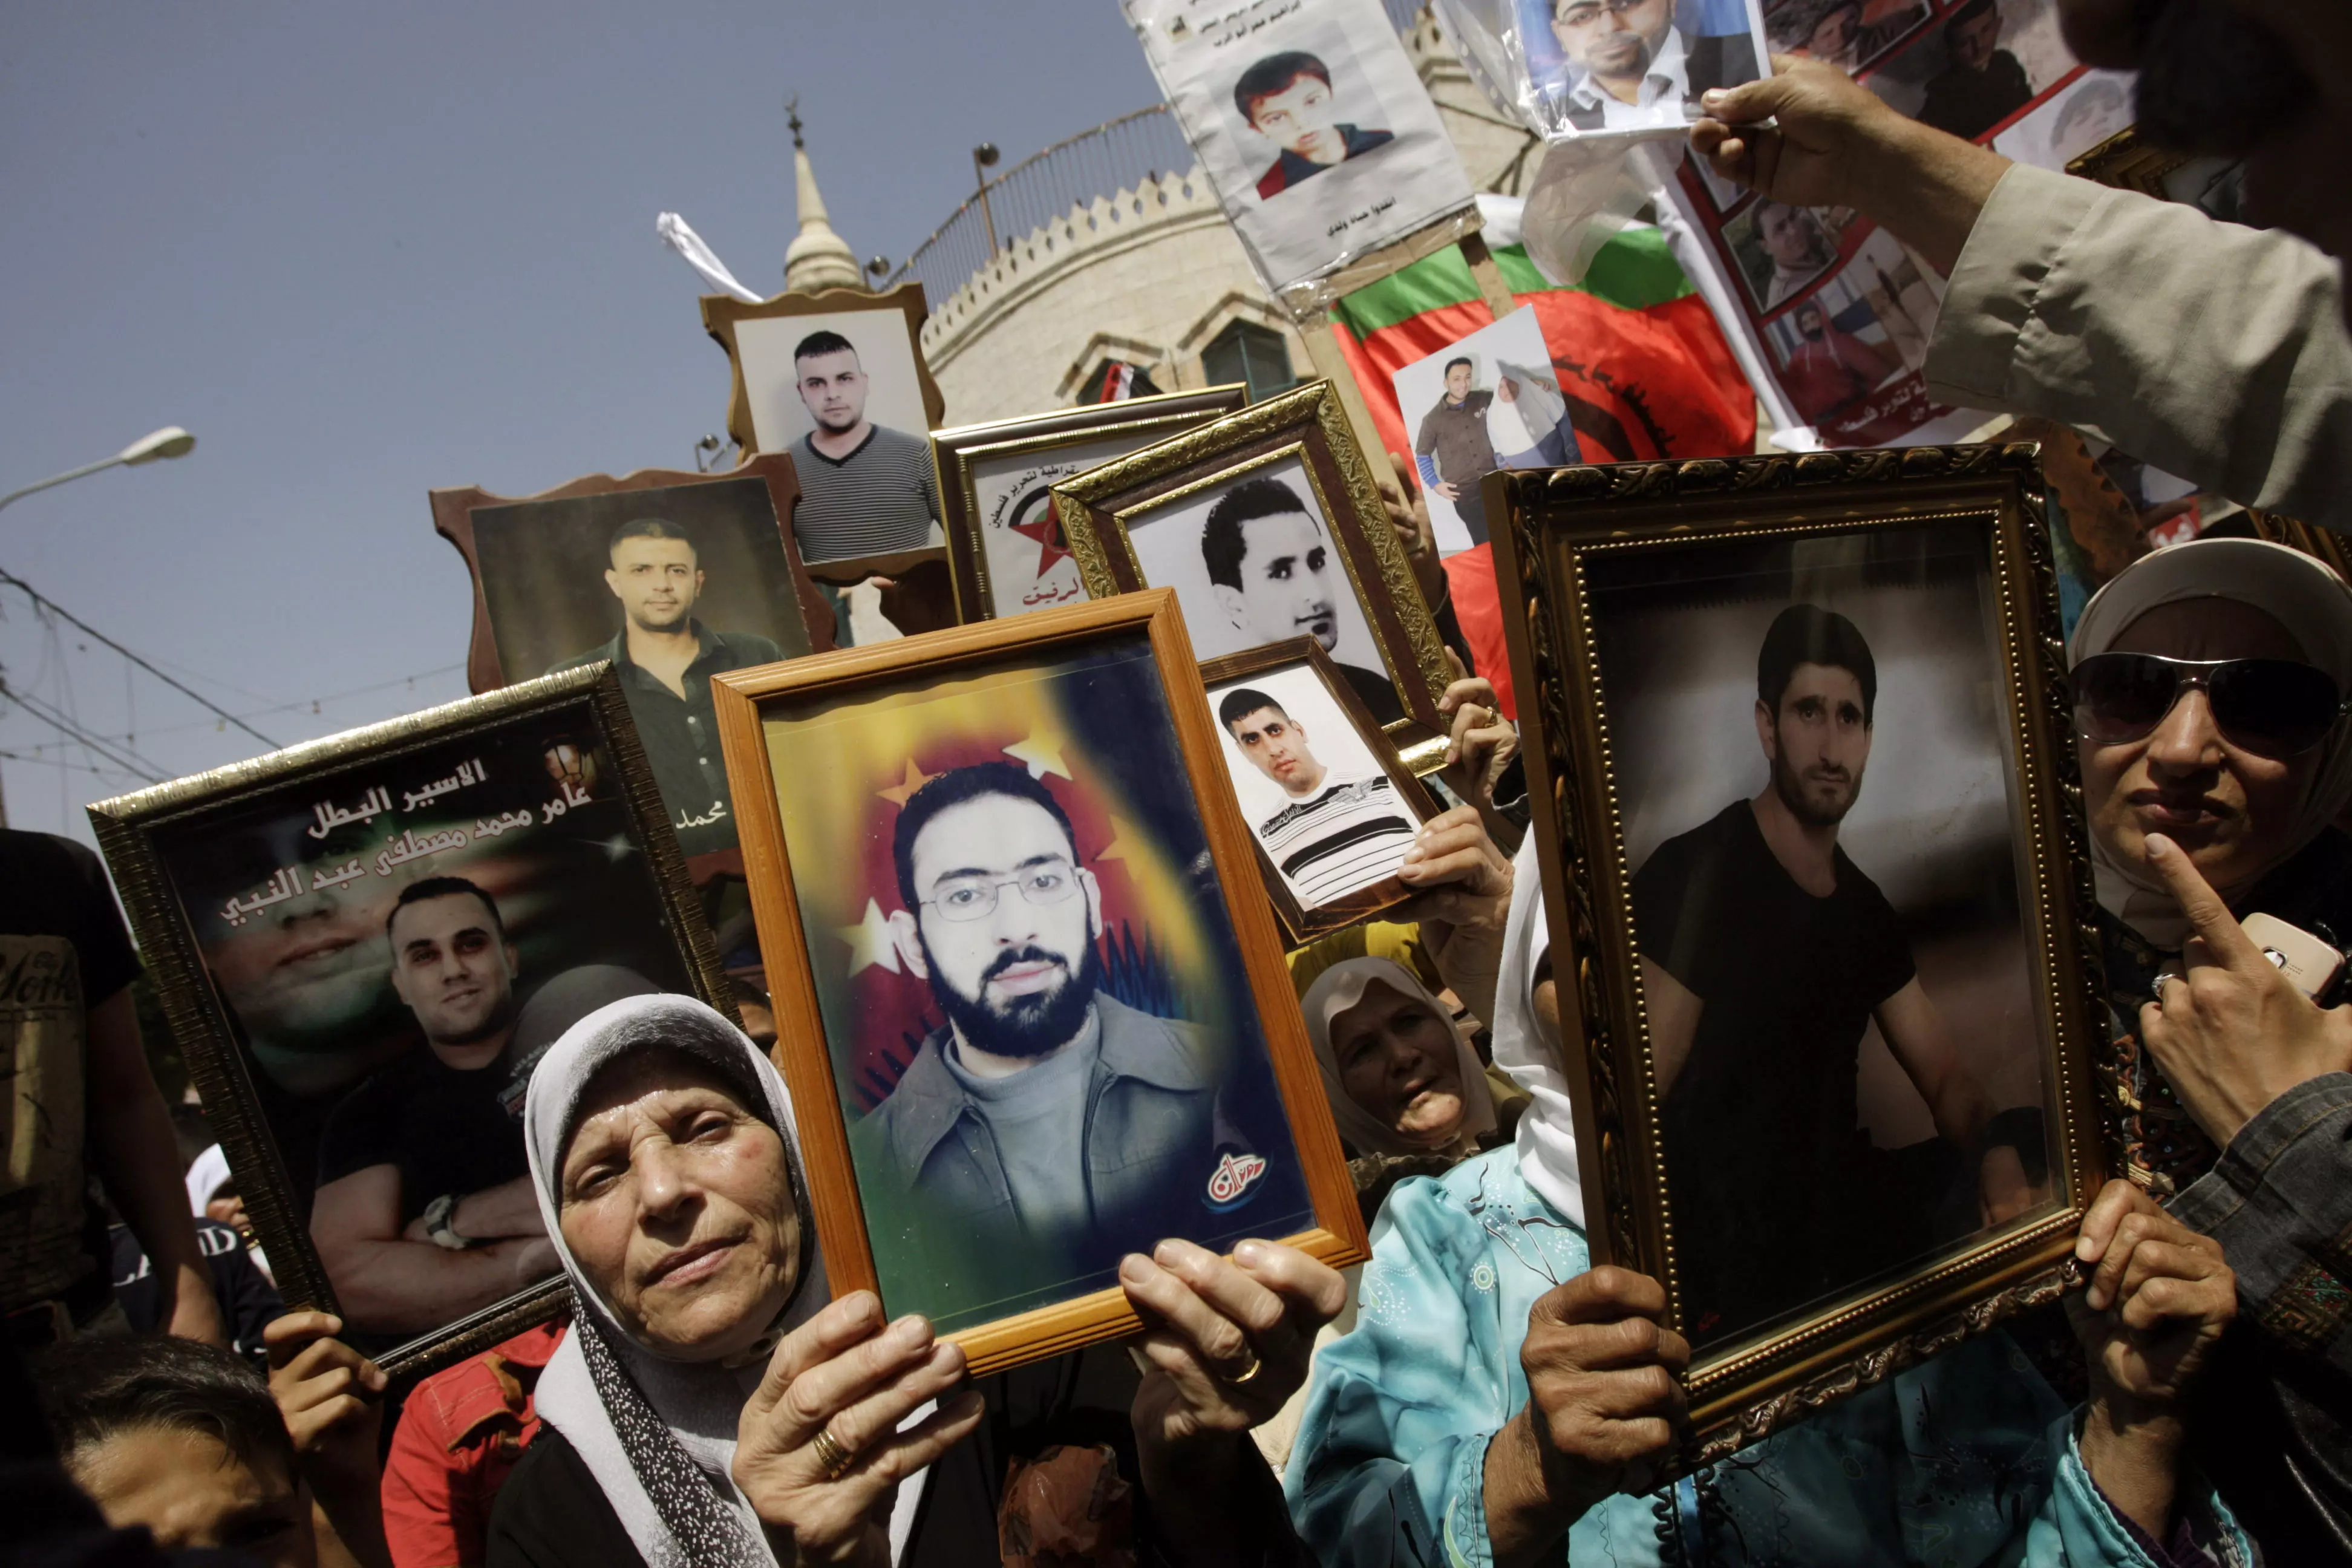 "הנושא ירד מסדר היום". עצרת תמיכה באסירים הפלסטינים בג'נין